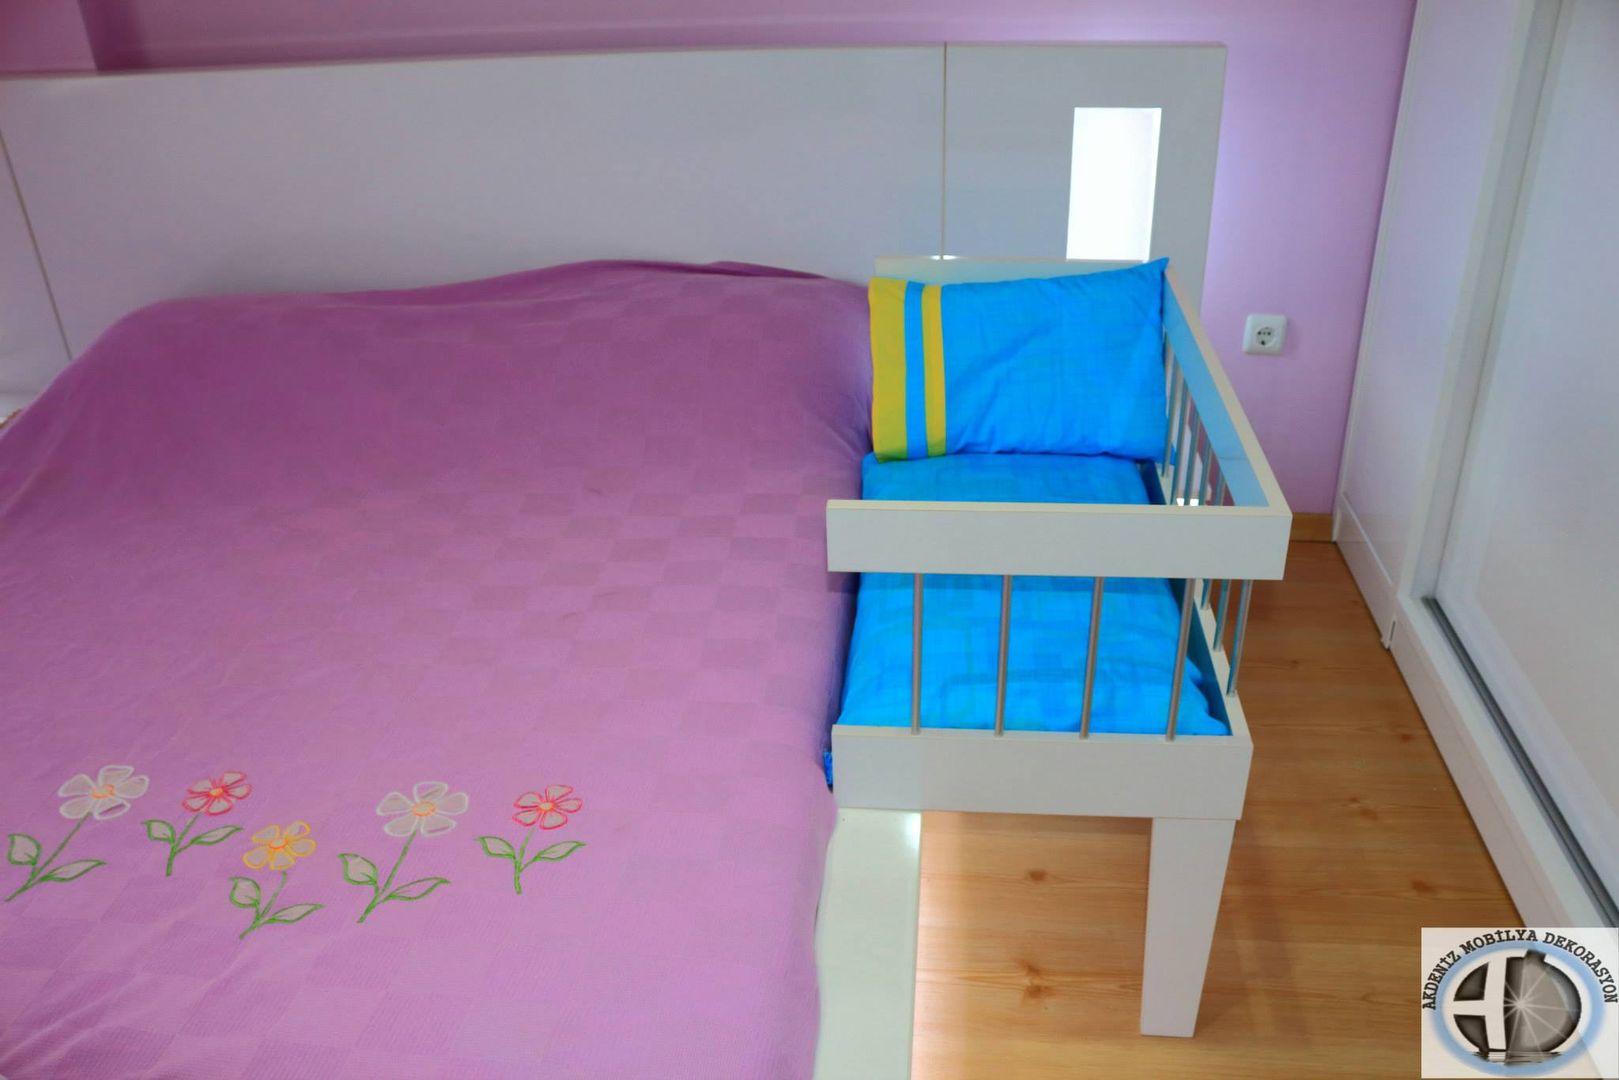 Anne Yanı Beşiği, Akdeniz Dekorasyon Akdeniz Dekorasyon Nursery/kid’s room Beds & cribs